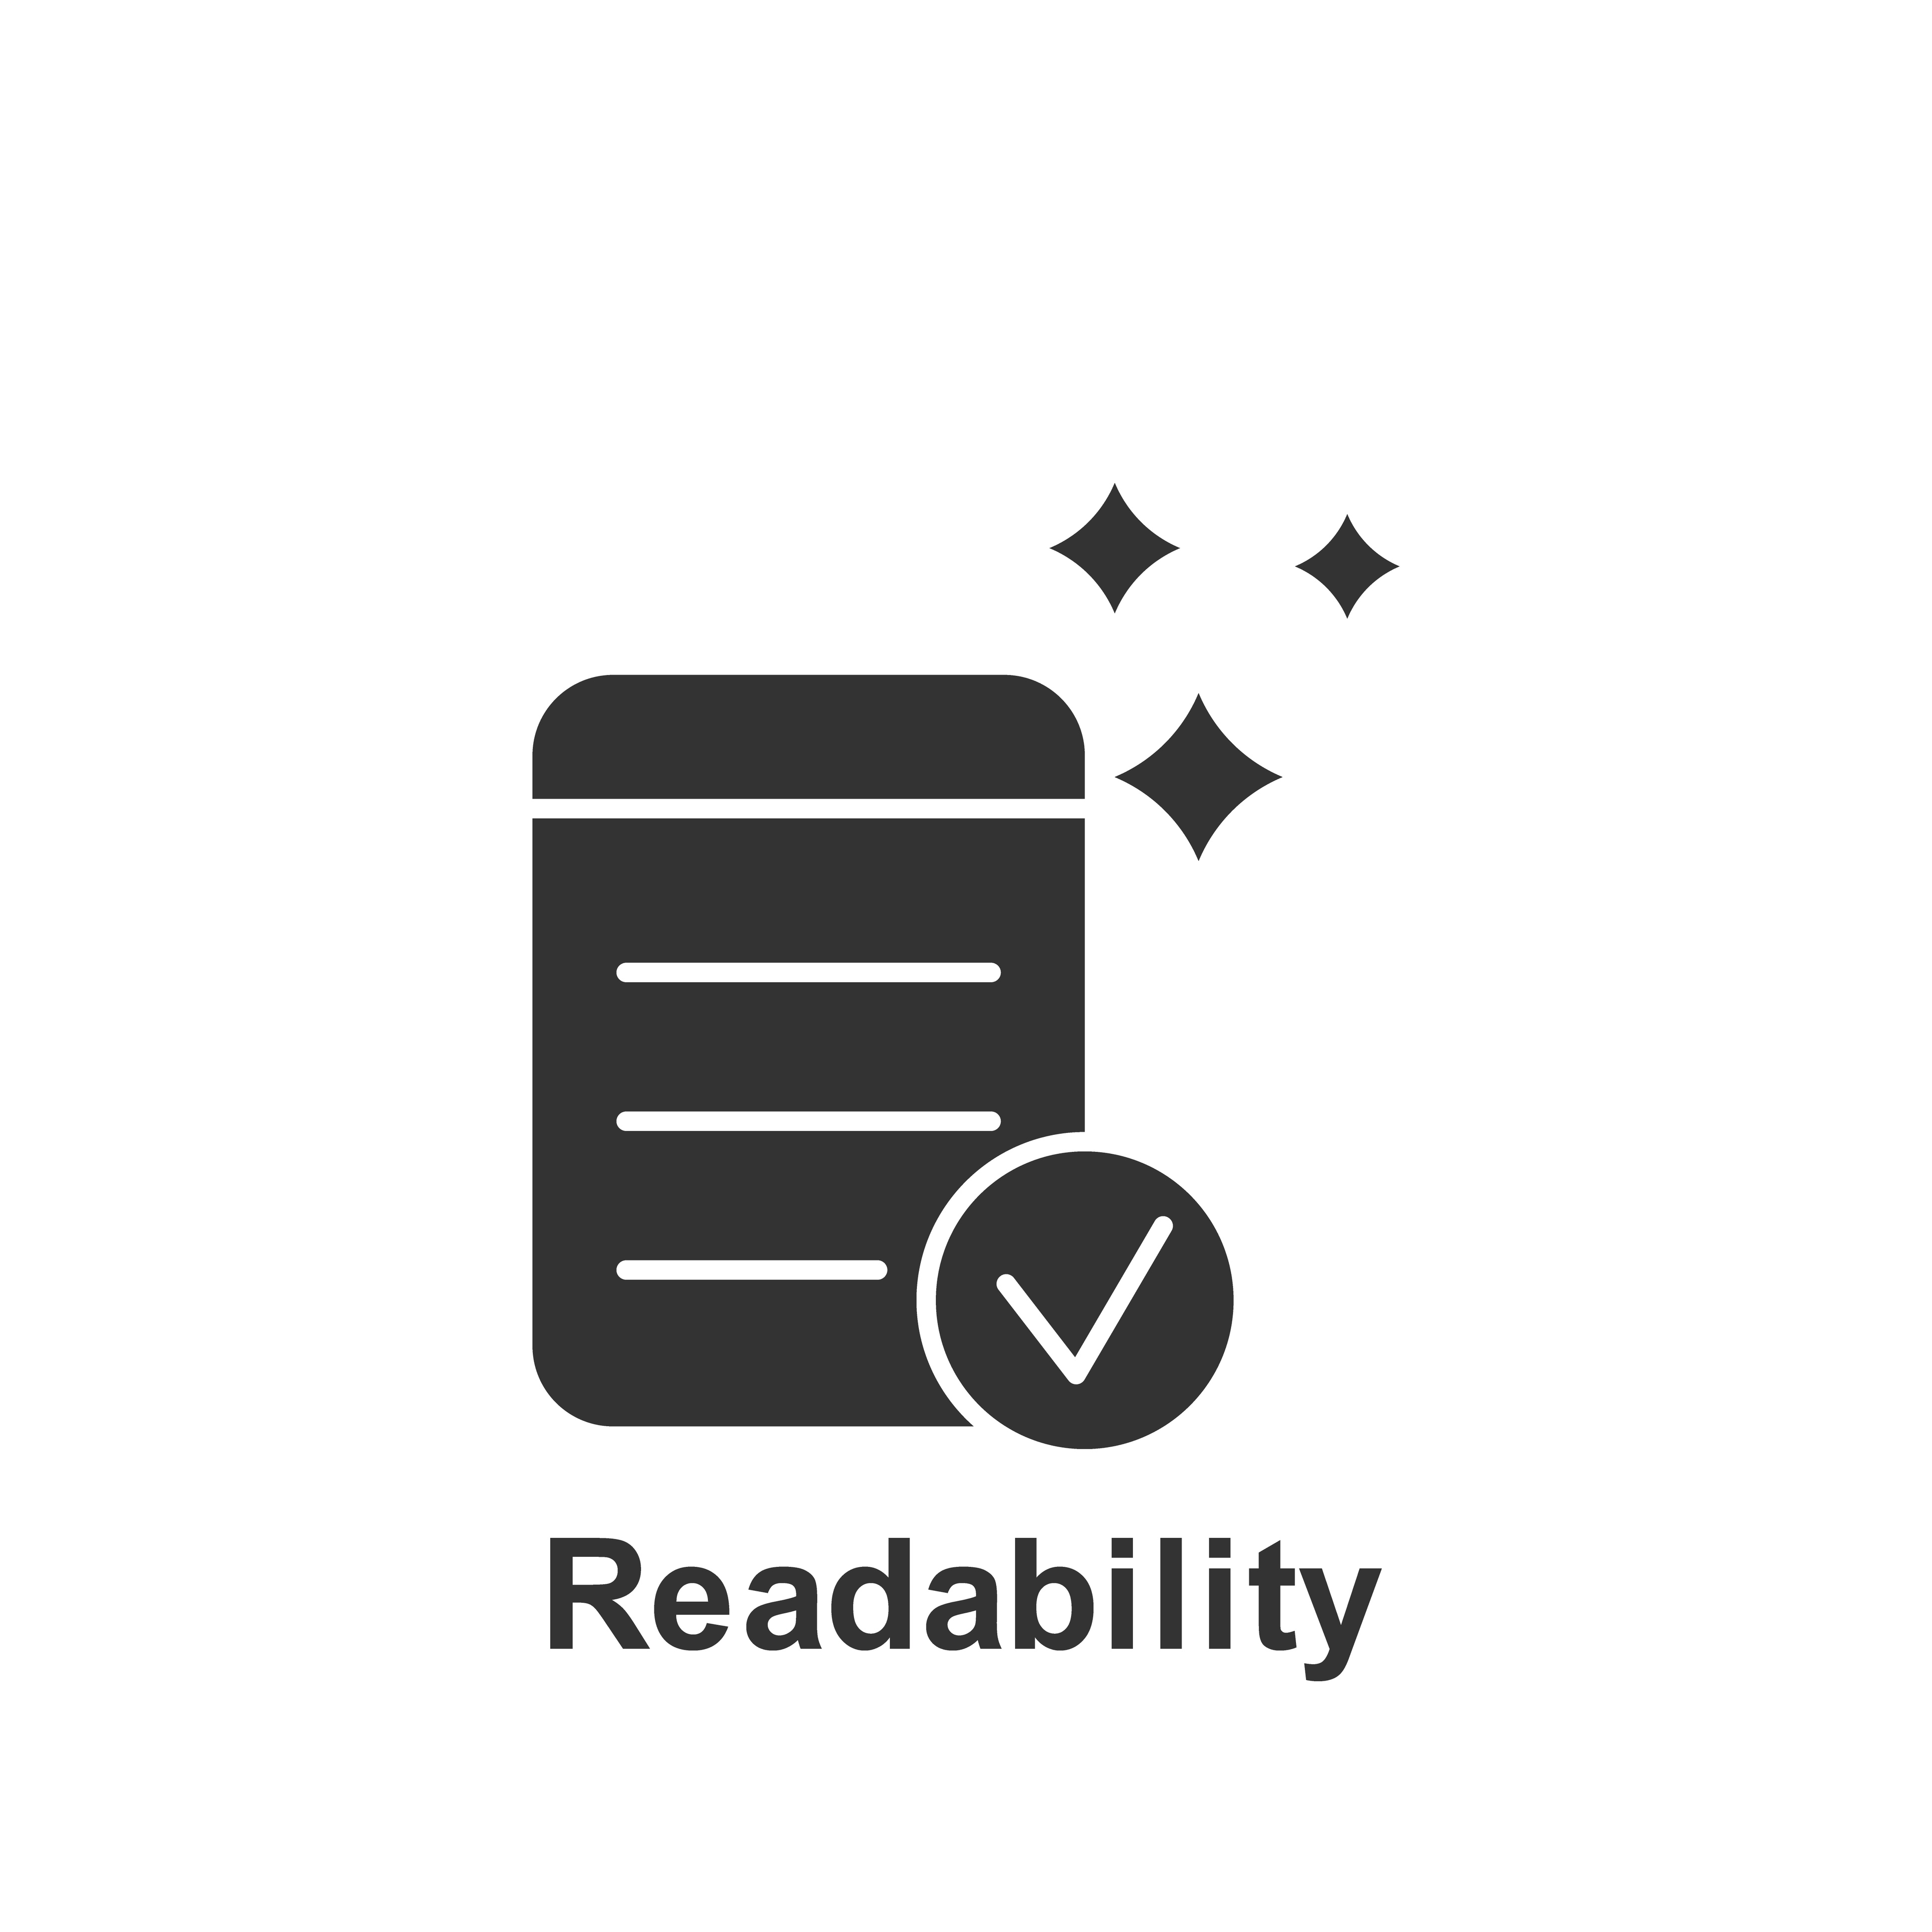 readability and seo